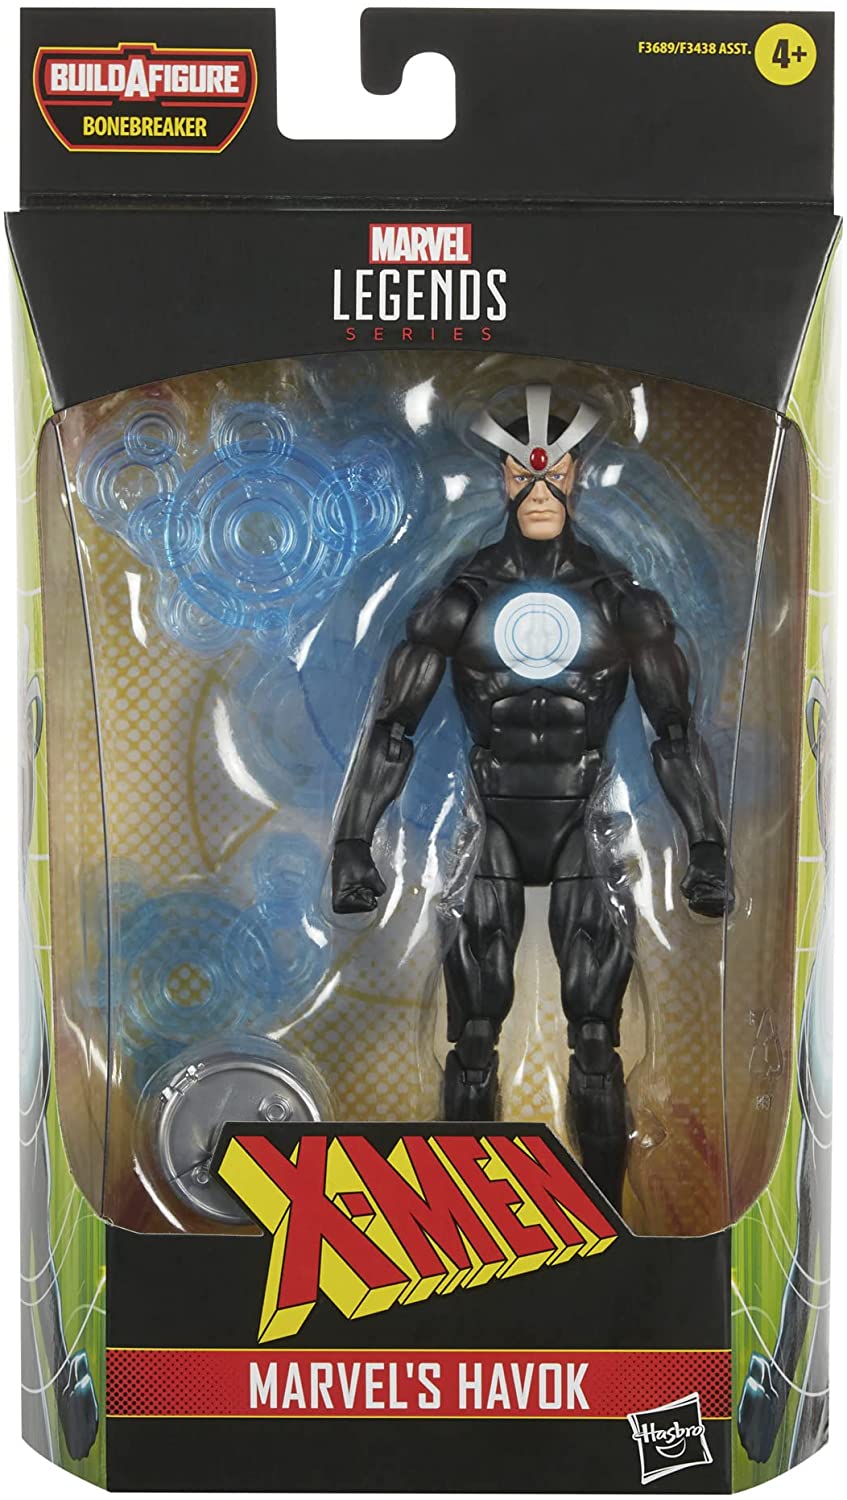 Marvel Legends Series X-Men Marvel's Havok Actionfigur, 15 cm großes Sammelspielzeug,